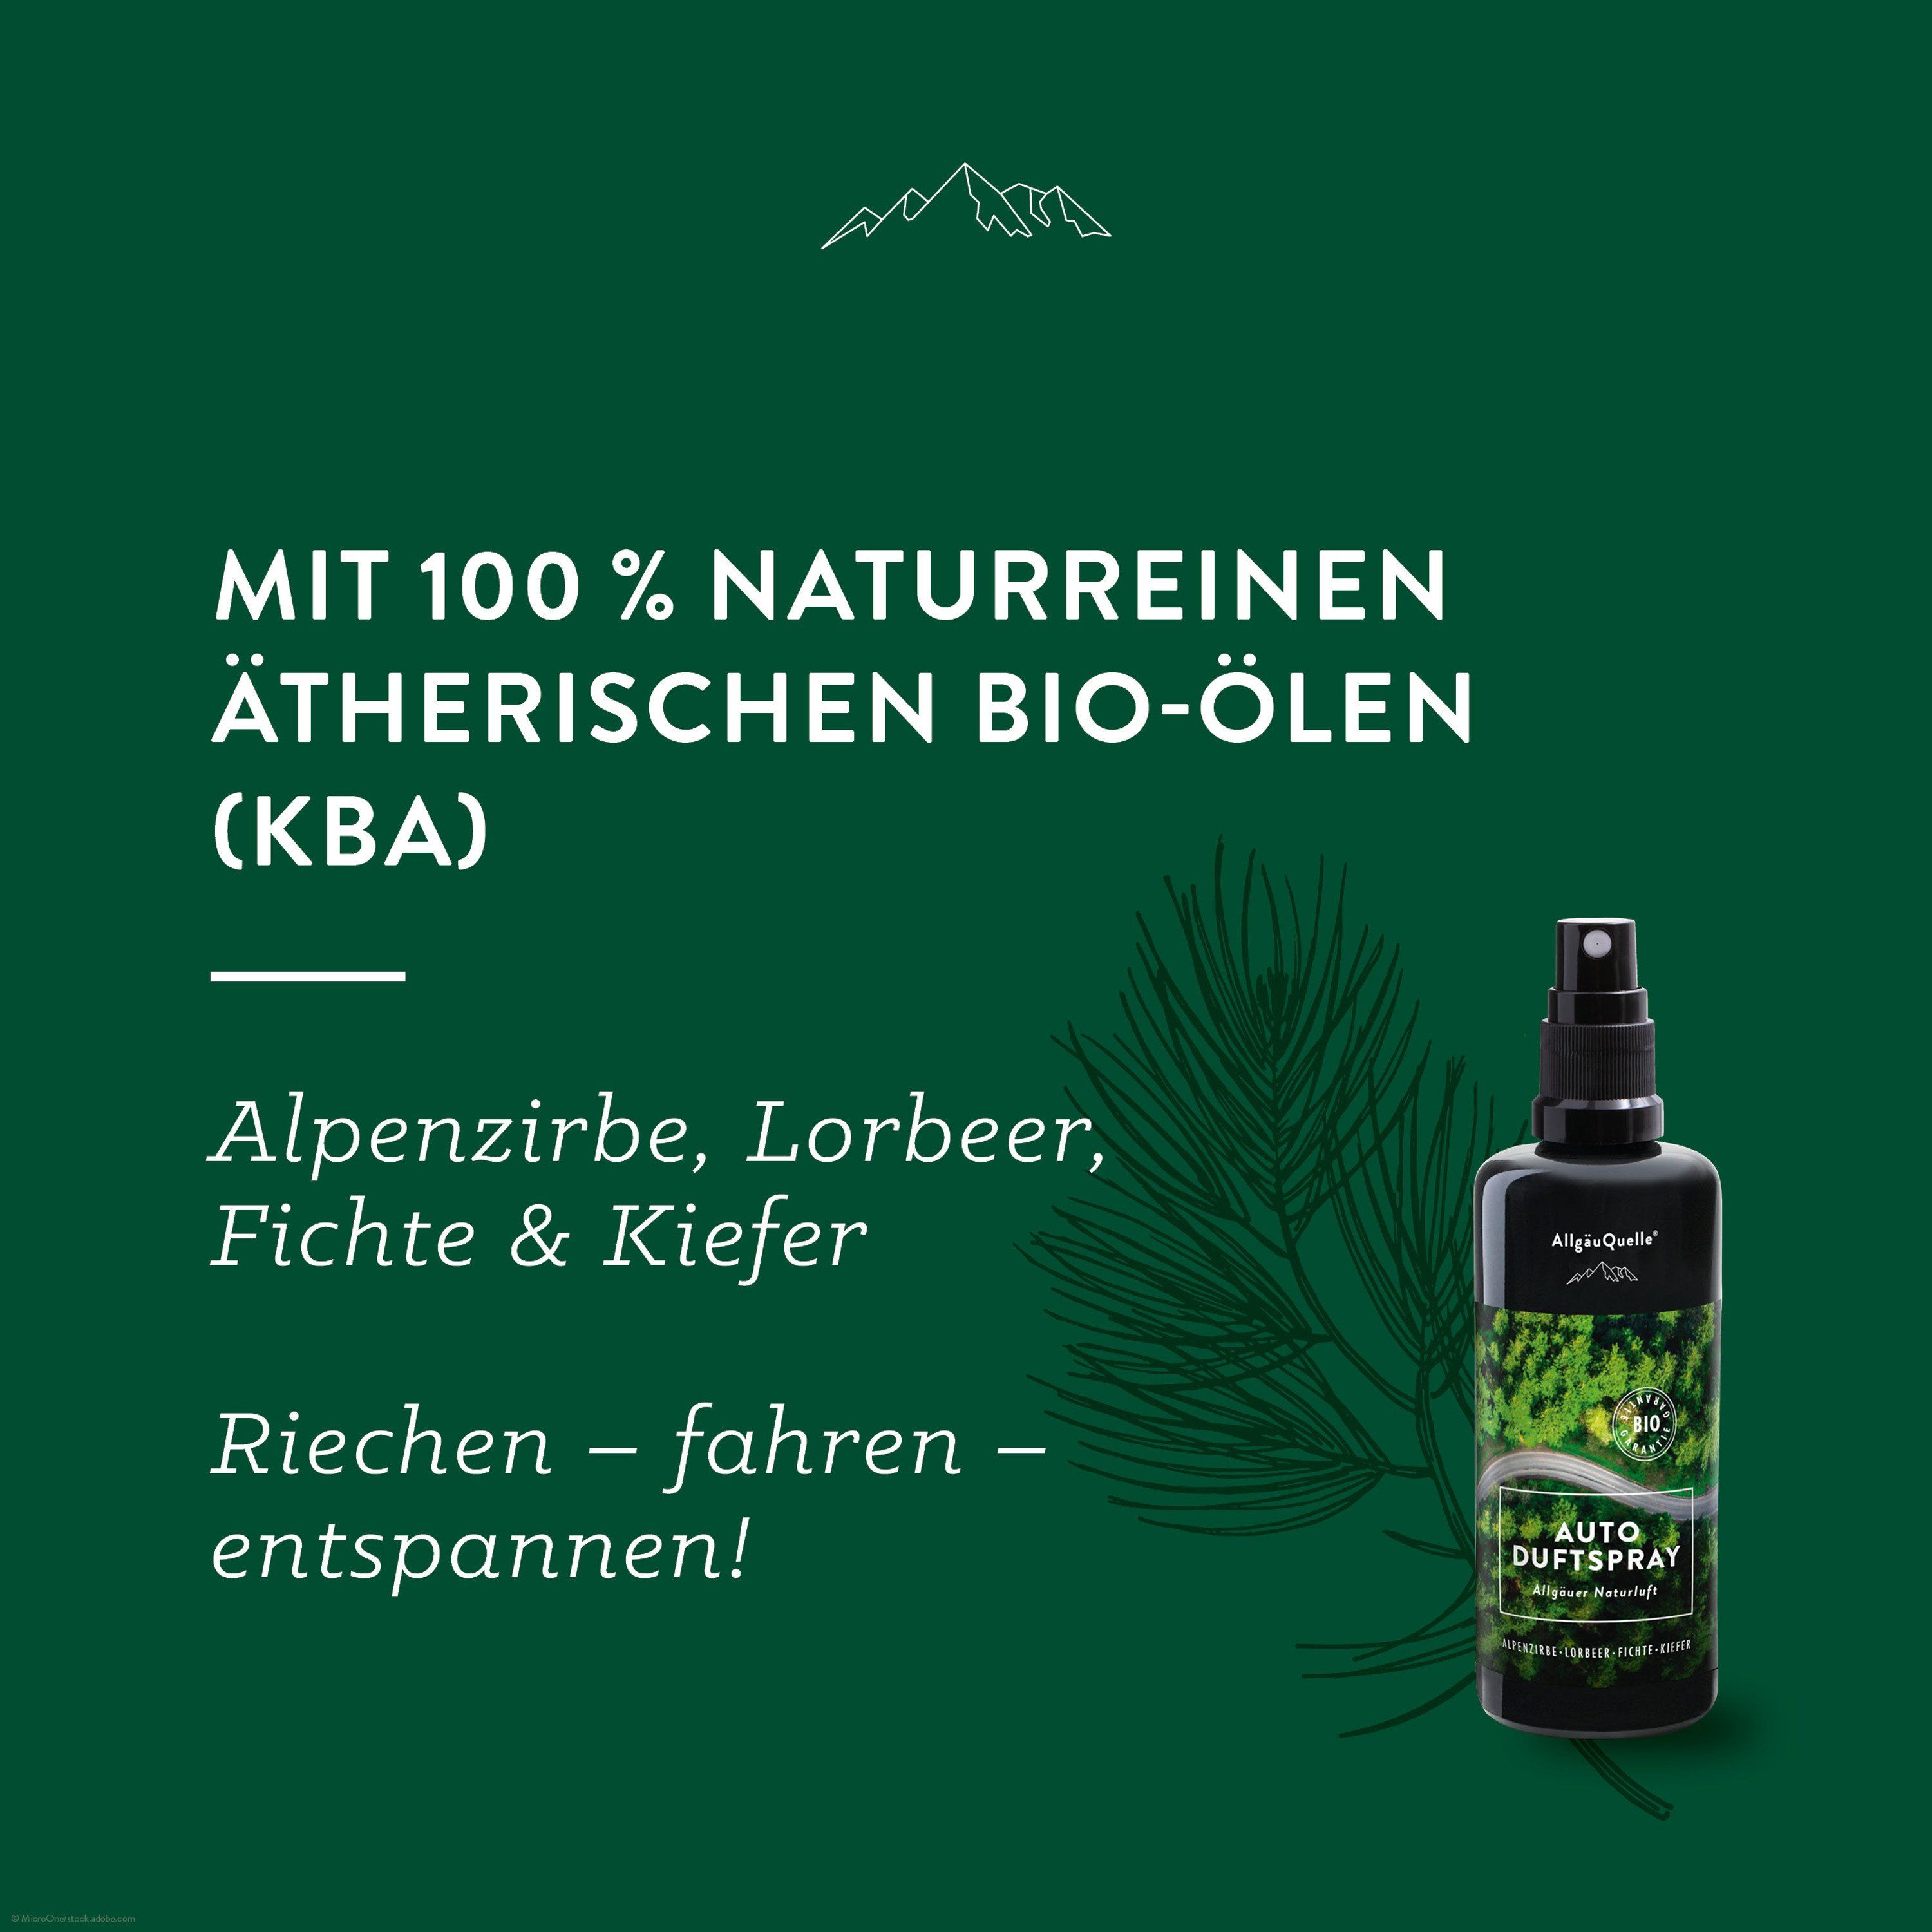 AllgäuQuelle Bio Autoduft Lufterfrischer Duftspray Alpenzirbe, Lorbeer,  Fichte und Kiefer 100 ml - SHOP APOTHEKE